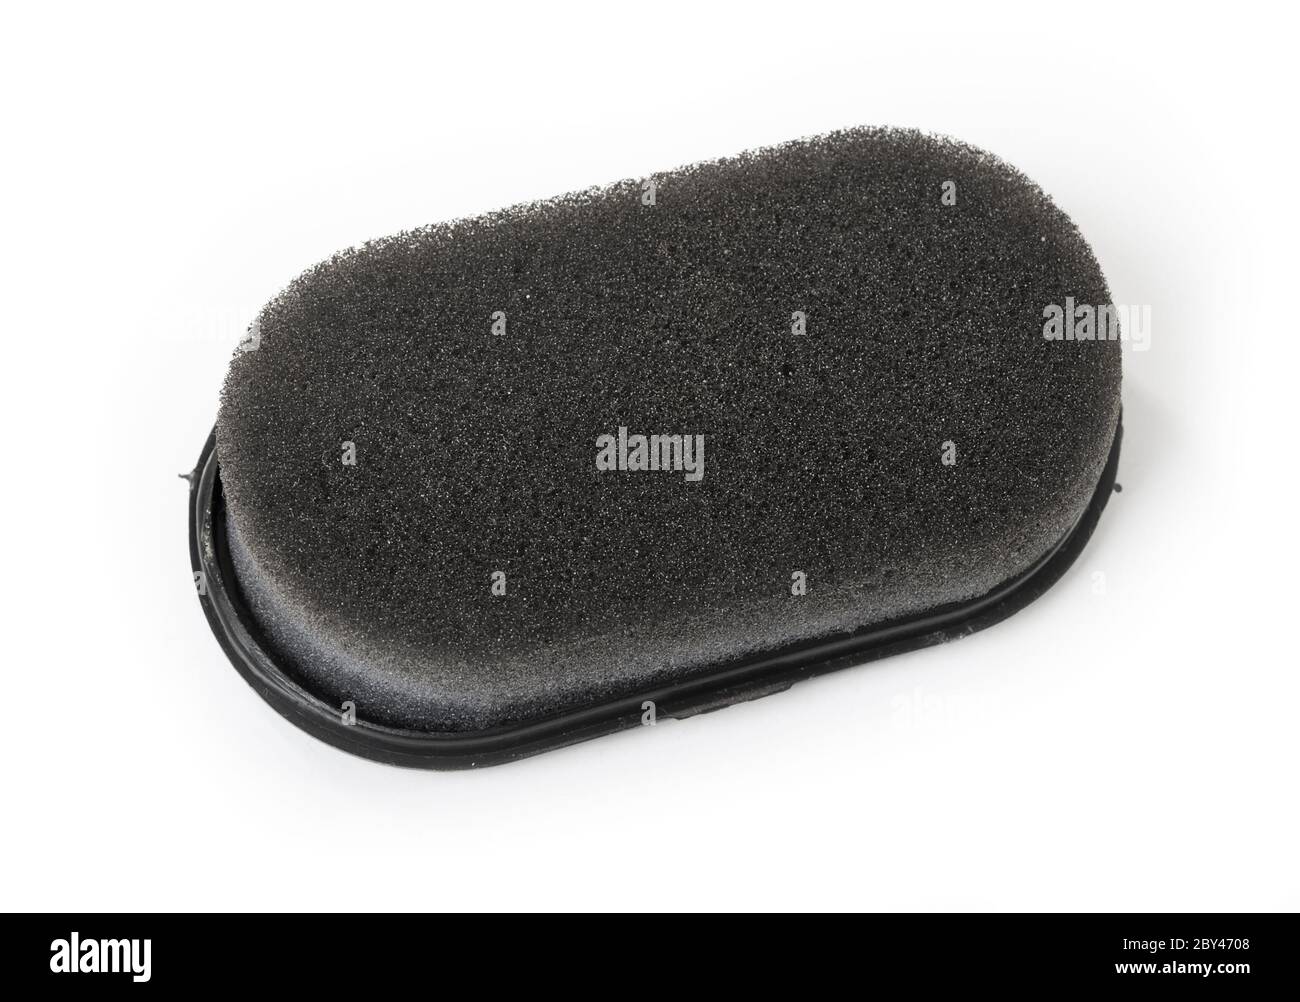 Shoe shine sponge, isolated on white Stock Photo - Alamy